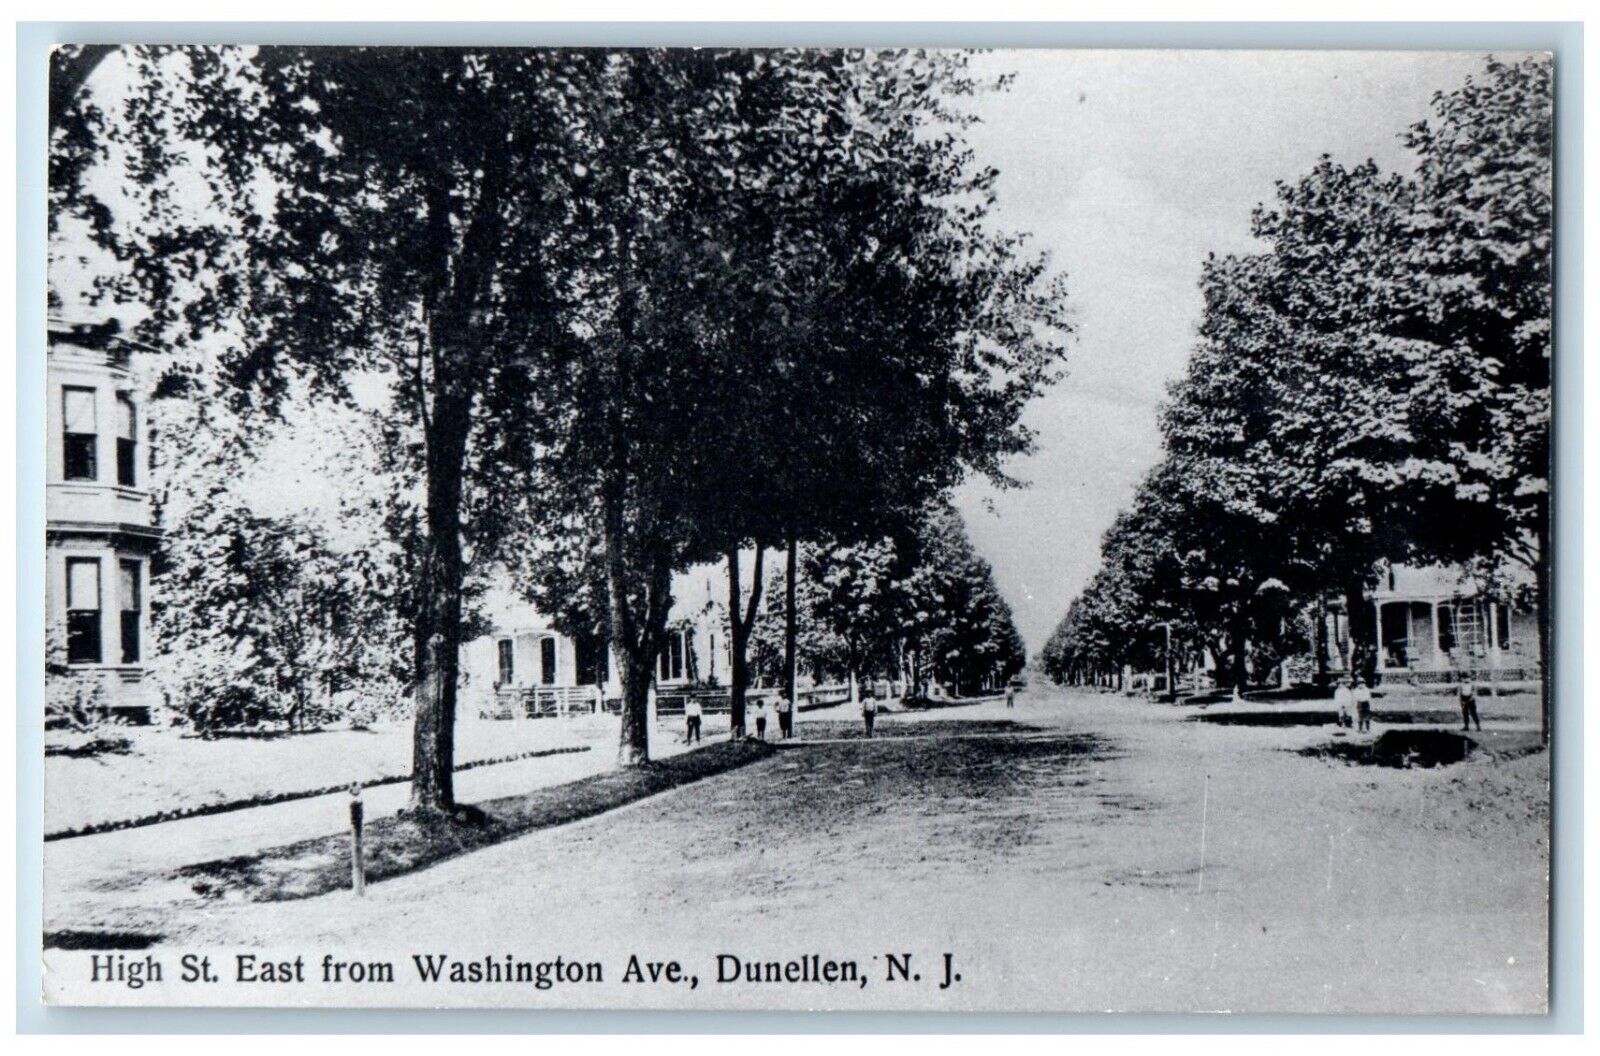 Dunellen New Jersey Postcard High St. East Washington Ave. c1940 Vintage Antique